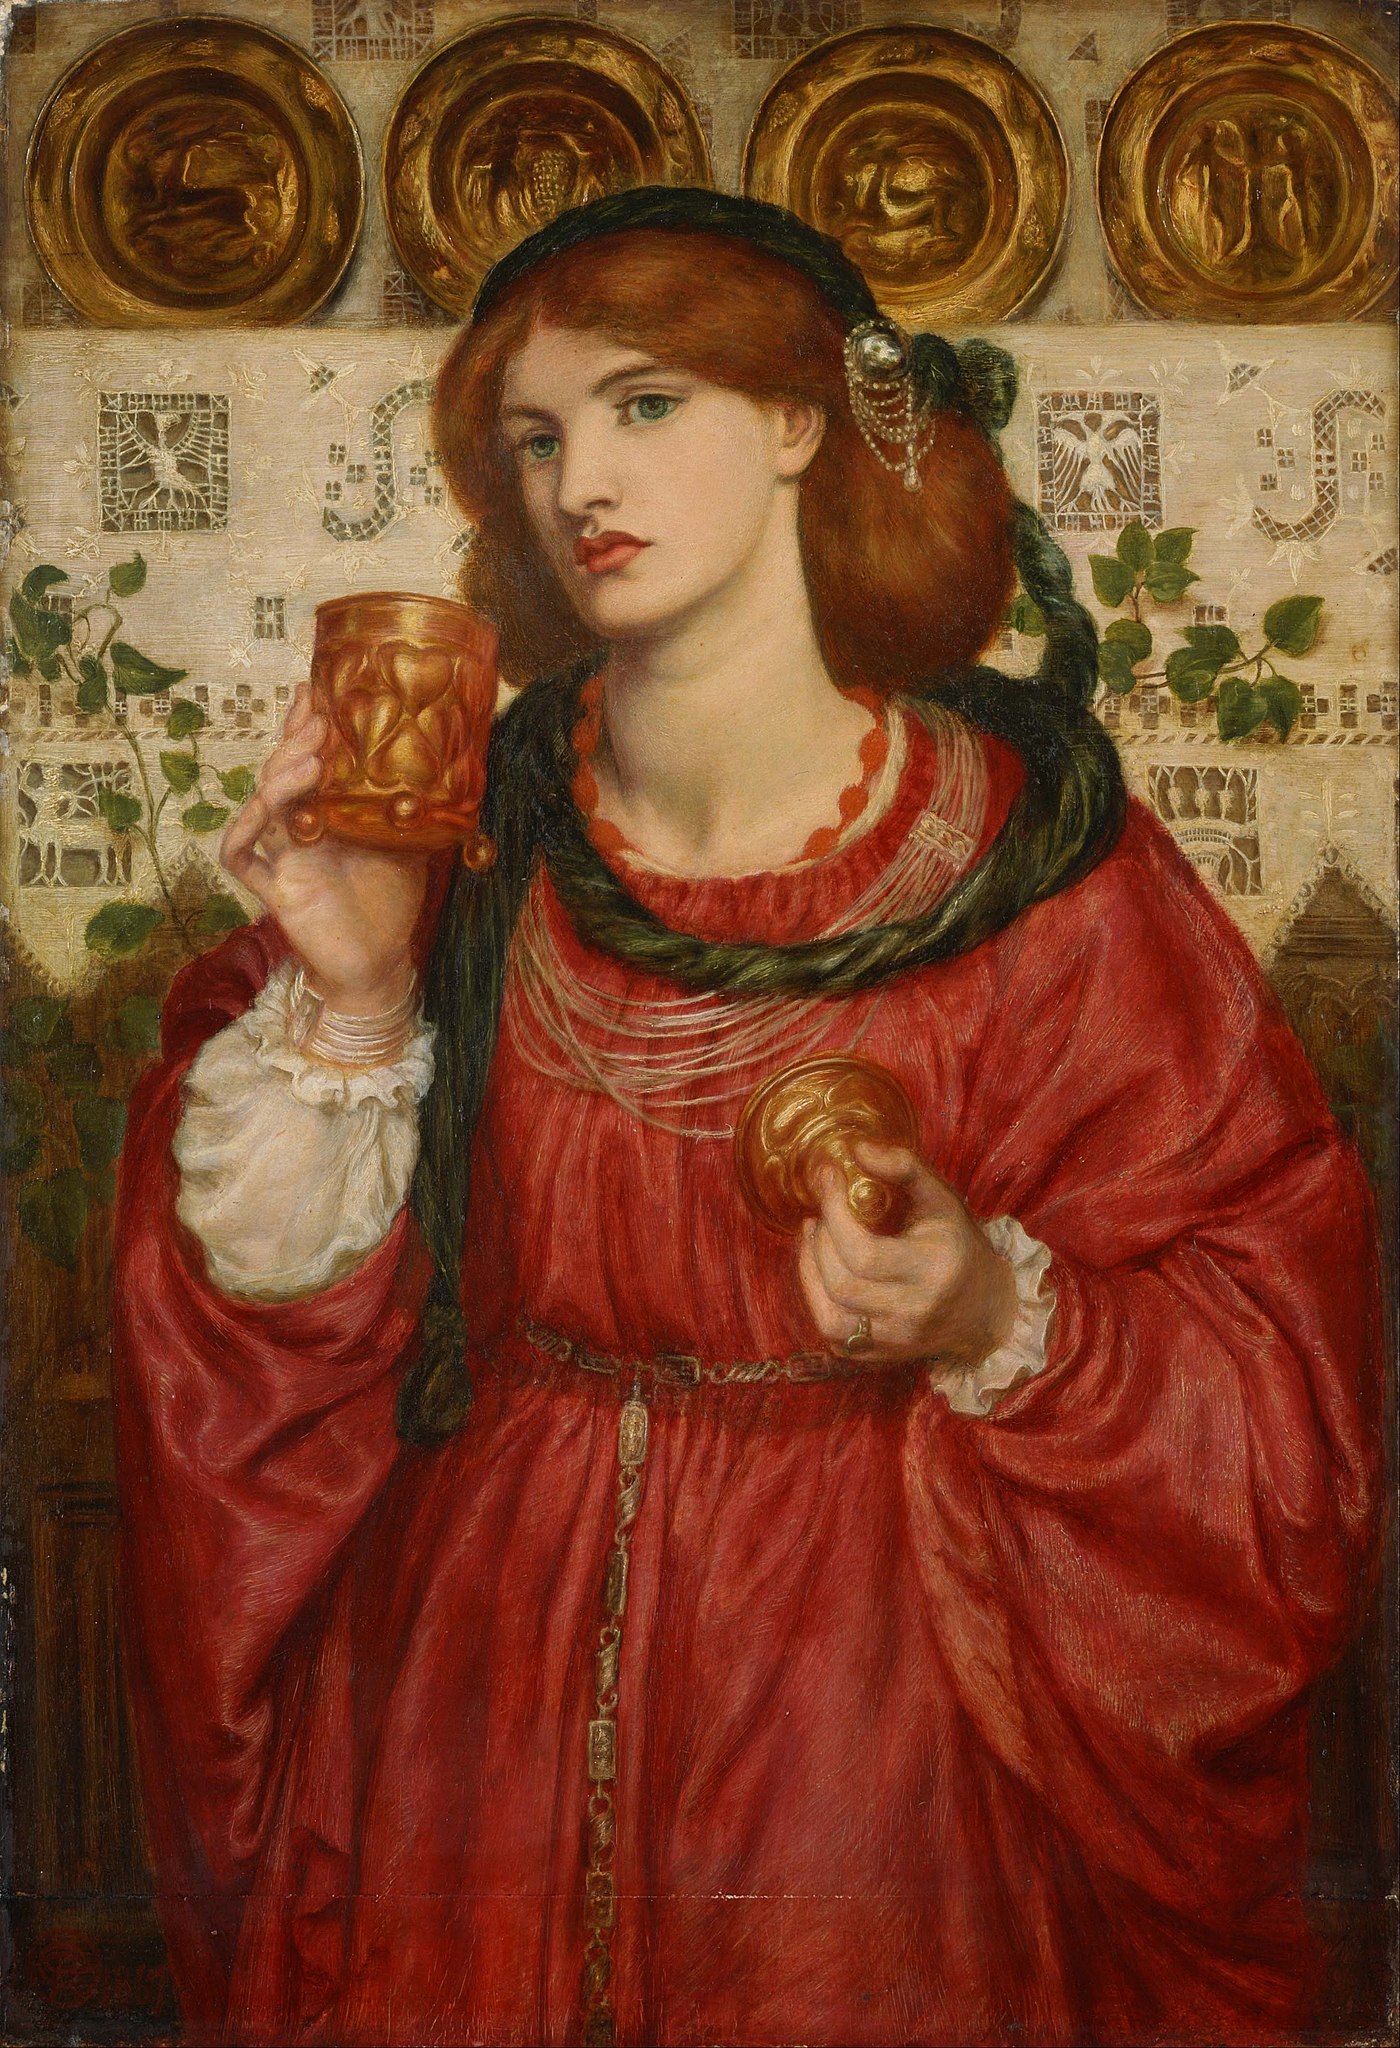 愛の杯 by Dante Gabriel Rossetti - 1867年 - 45.7 x 66 cm 